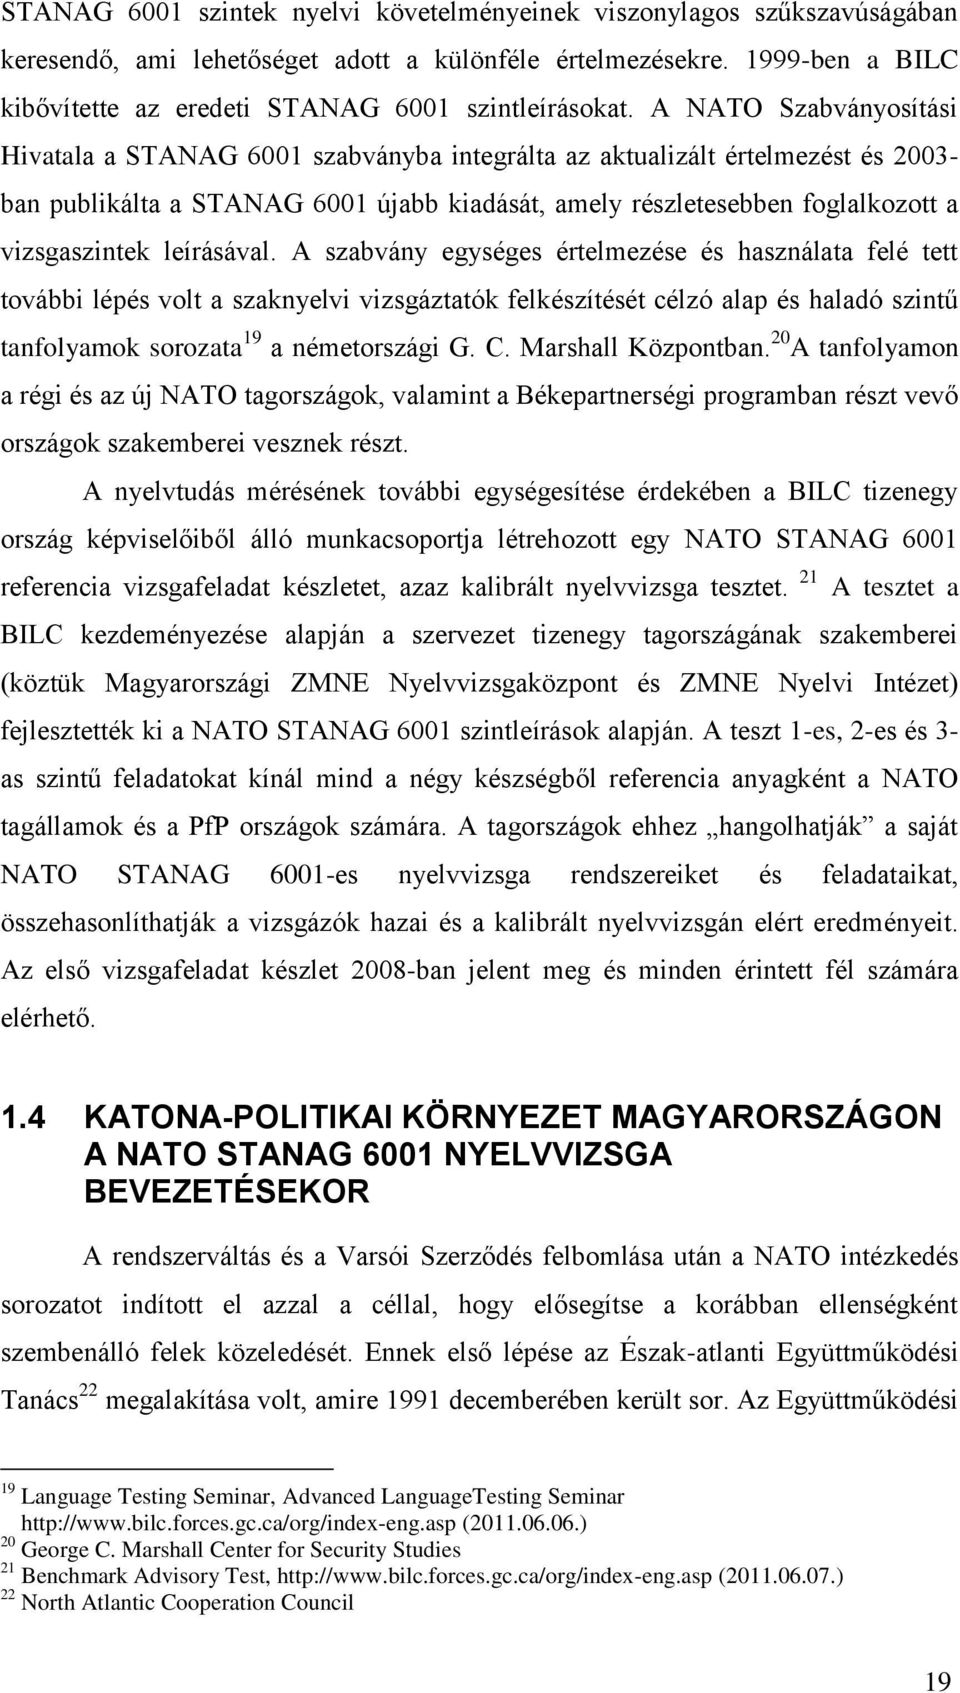 A NATO Szabványosítási Hivatala a STANAG 6001 szabványba integrálta az aktualizált értelmezést és 2003- ban publikálta a STANAG 6001 újabb kiadását, amely részletesebben foglalkozott a vizsgaszintek